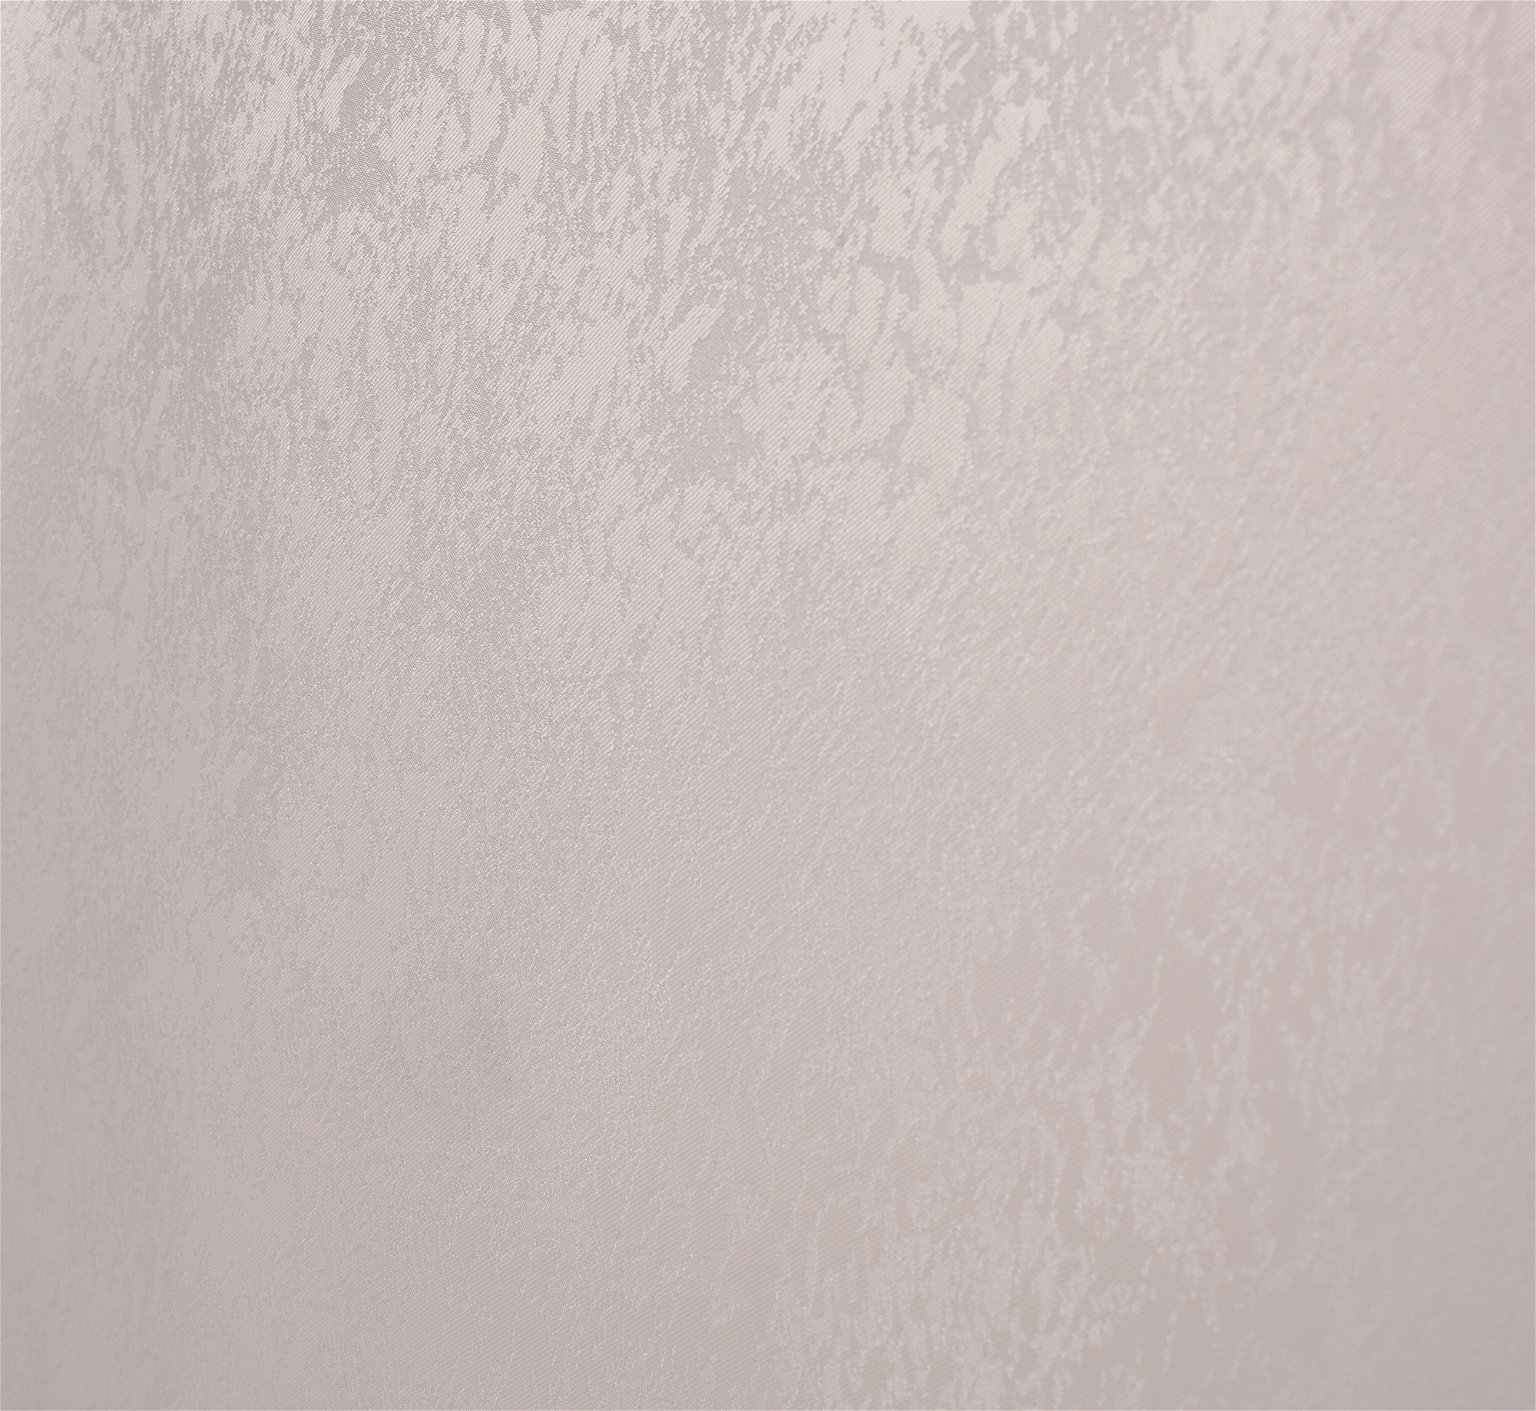 Klasikinė ritininė užuolaida LONDON, kreminės sp., 180 x 170 cm, 100 % poliesteris - 2